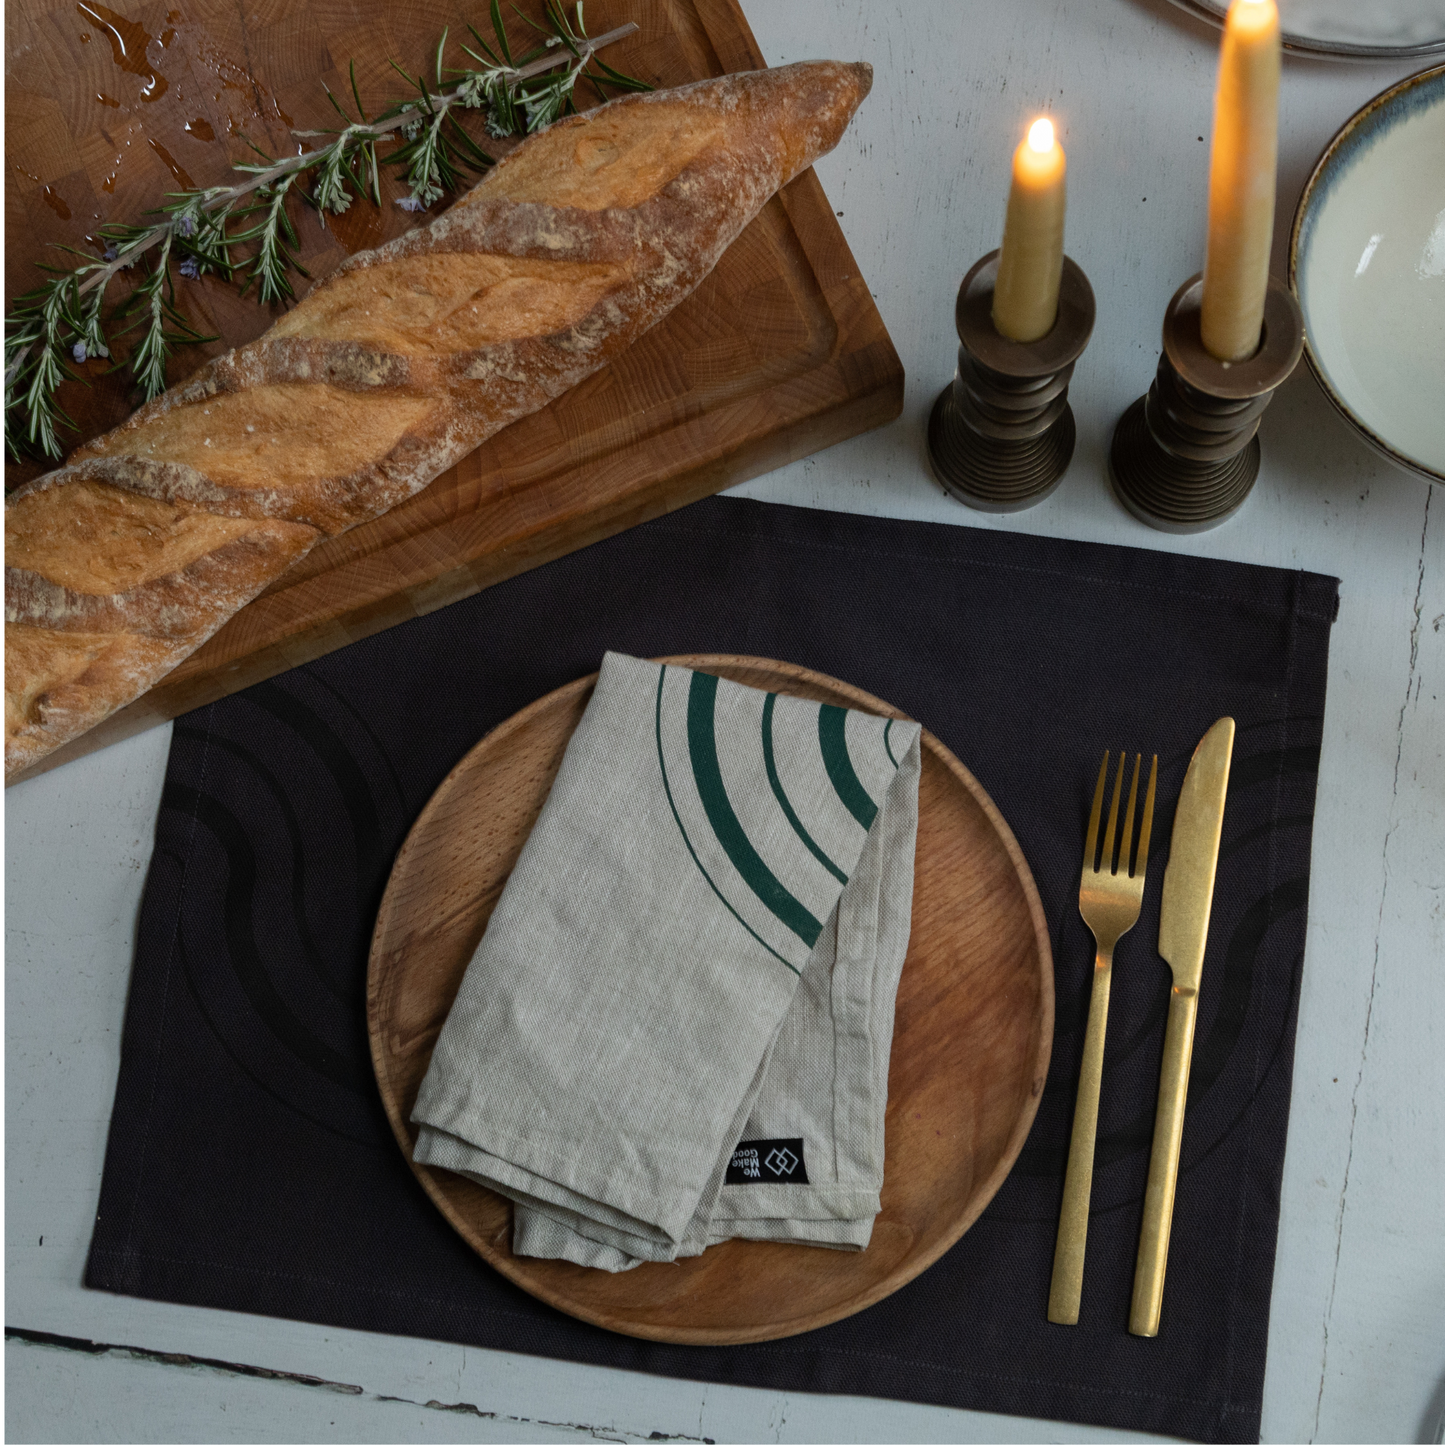 Oatmeal & Forest Green Handprinted Linen Napkin